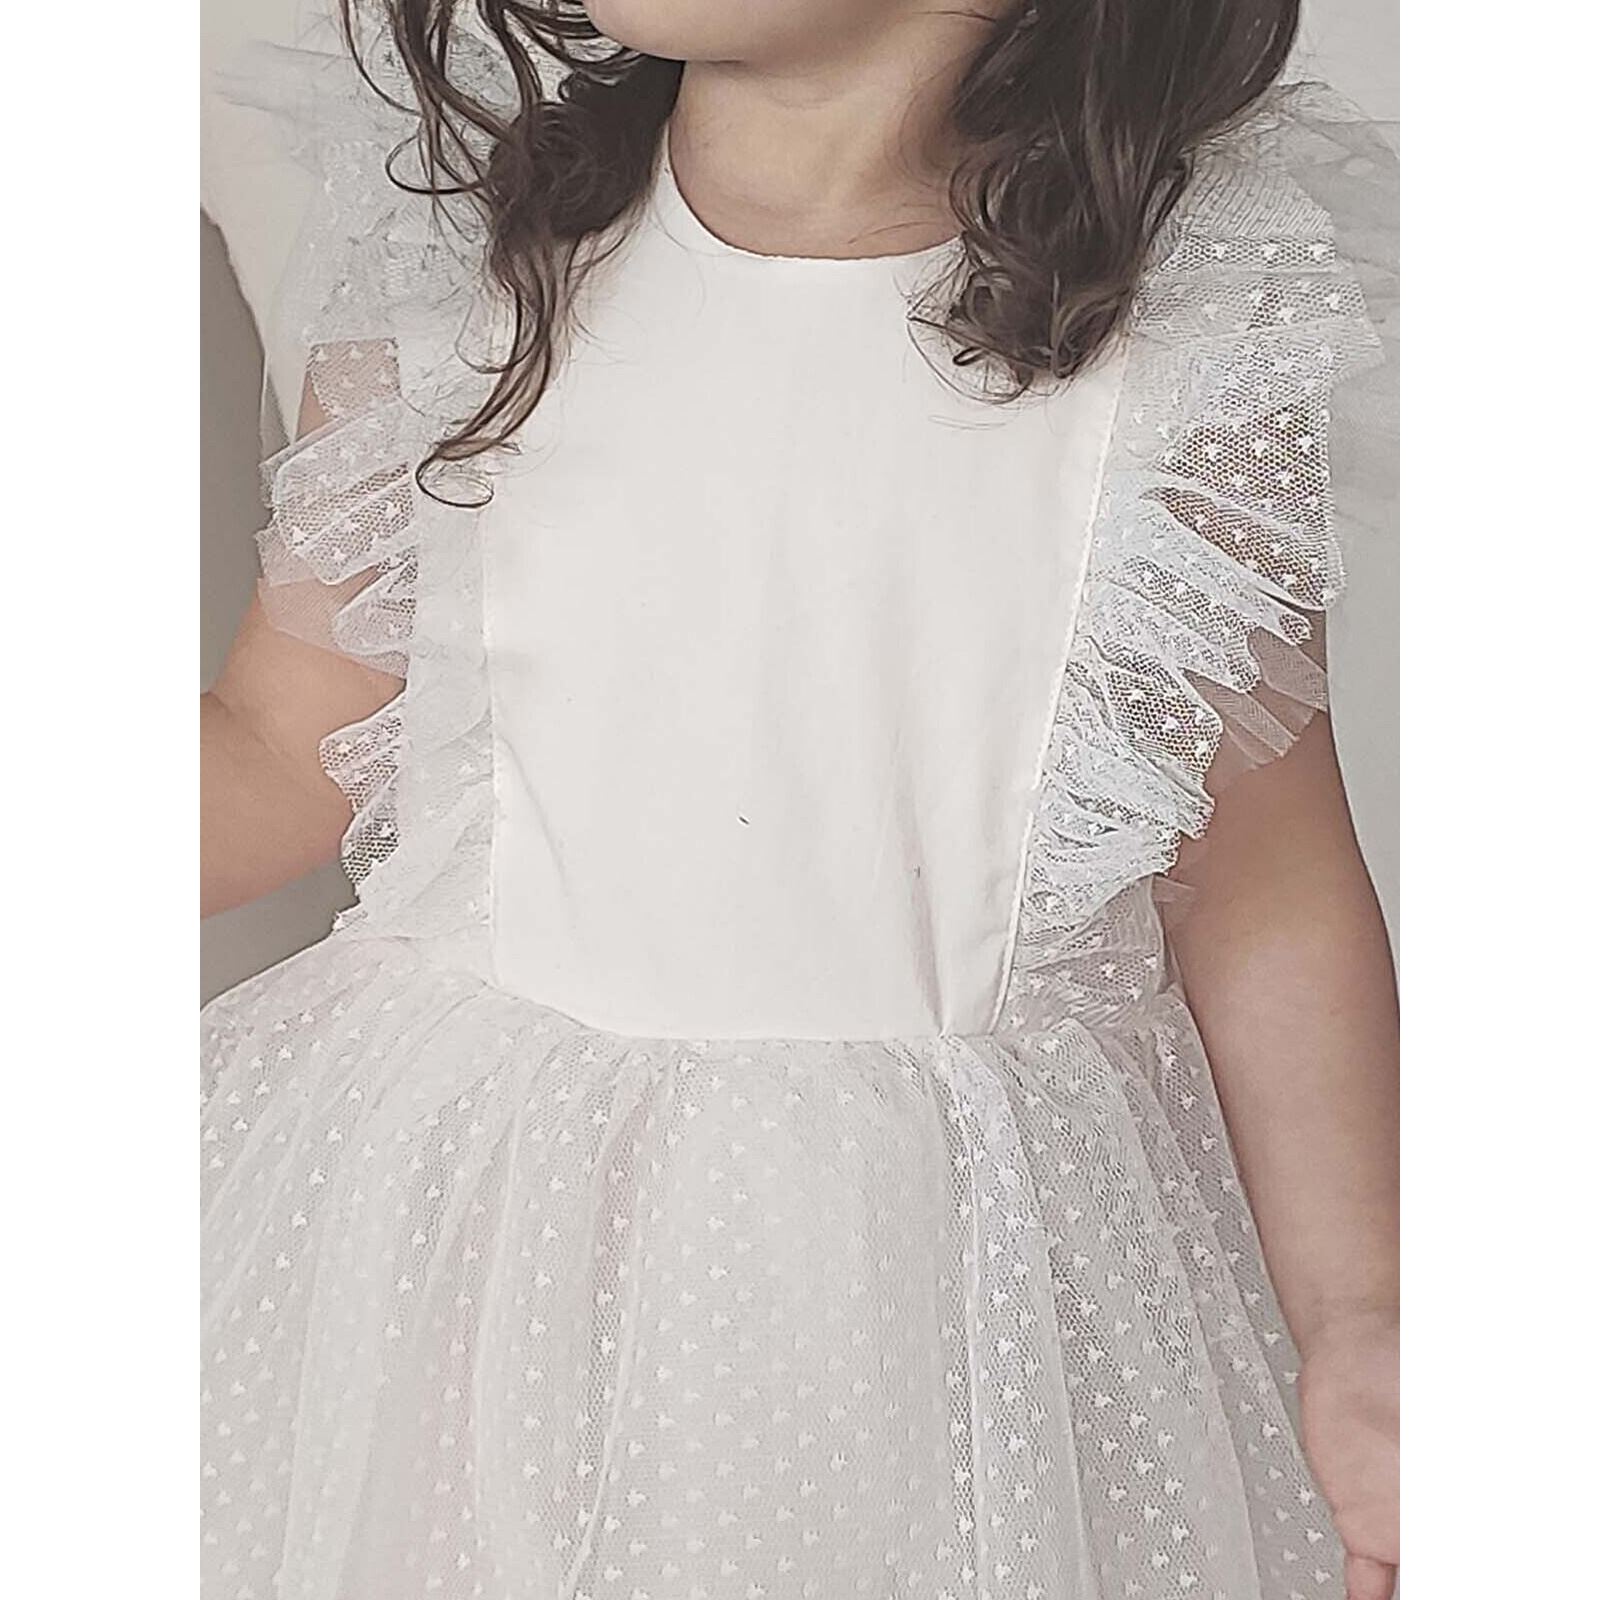 Shecco Babba Kız Çocuk Dantel Detaylı Elbise Bandana Takım 1-8 Yaş Beyaz